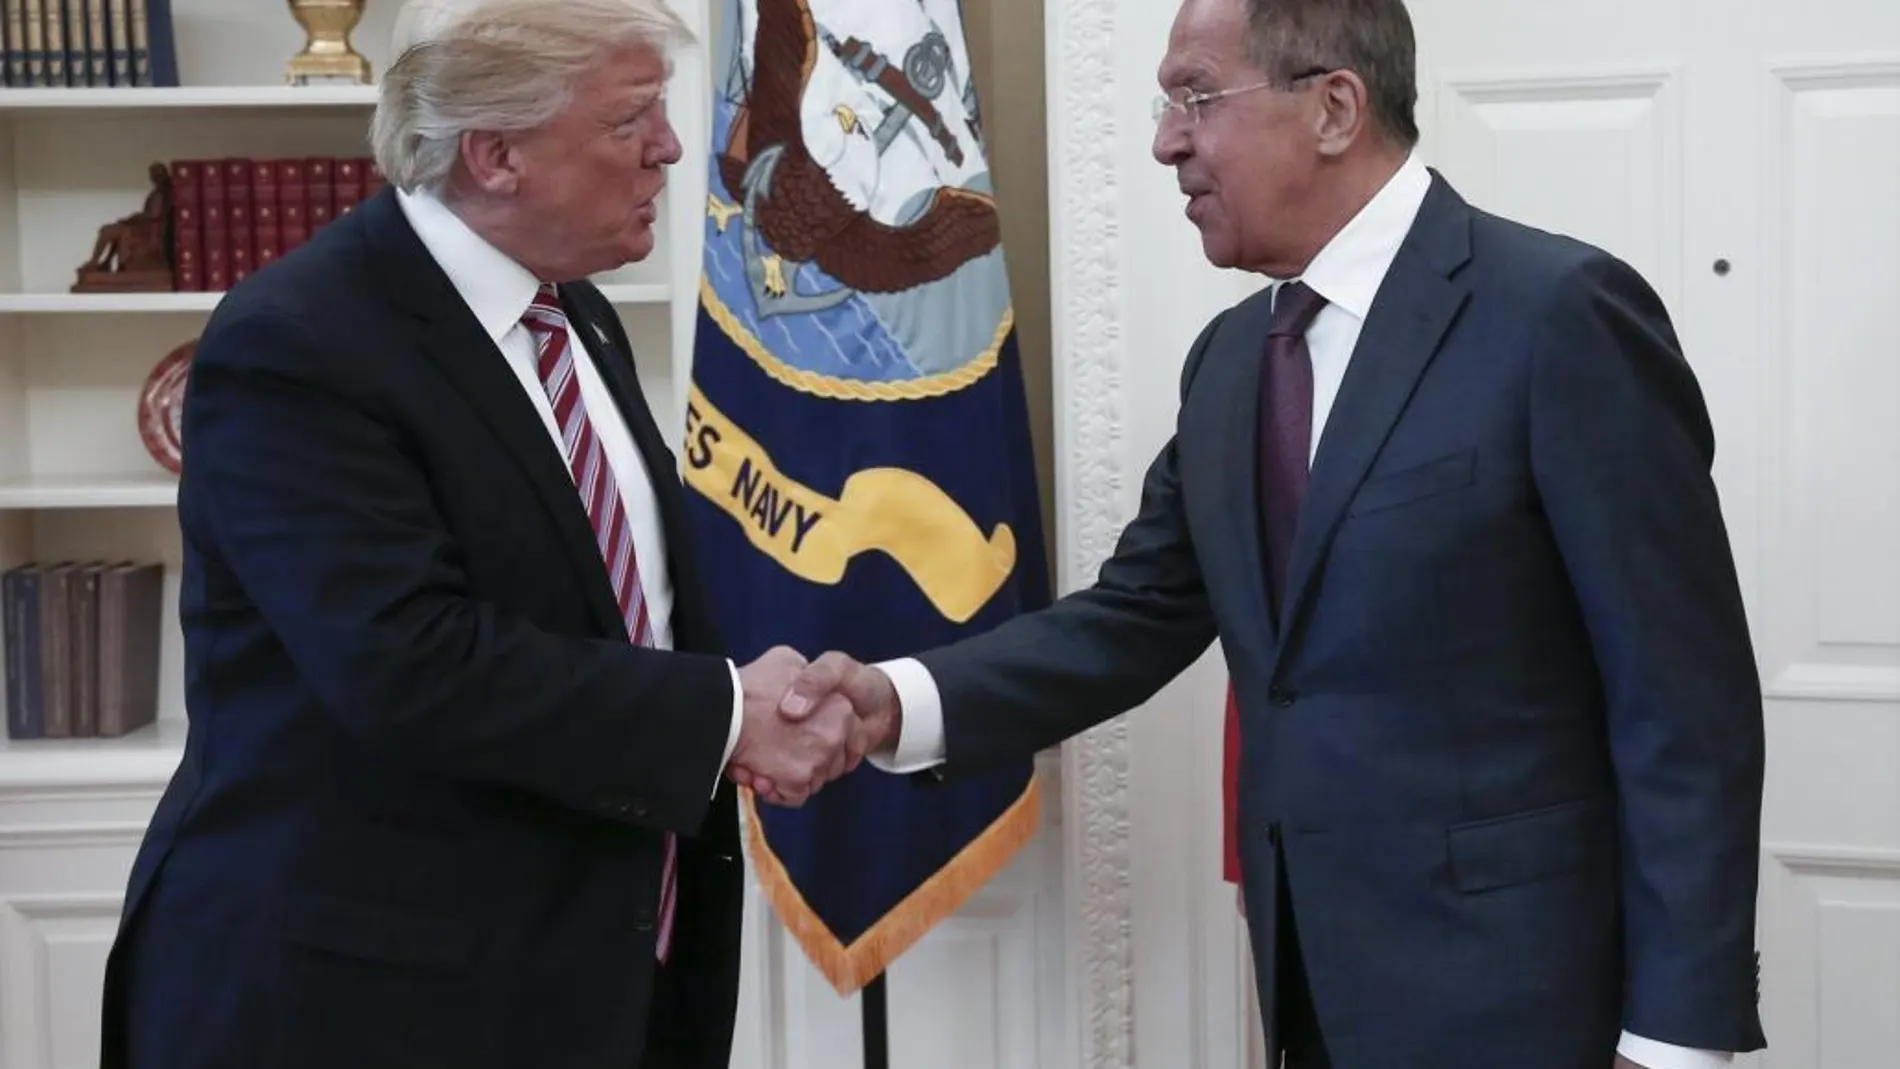 Fotografía facilitada por el Ministerio de Exteriores de Rusia que muestra al presidente de EE.UU., Donald Trump (i), estrechando la mano del ministro ruso de Exteriores, Serguéi Lavrov.